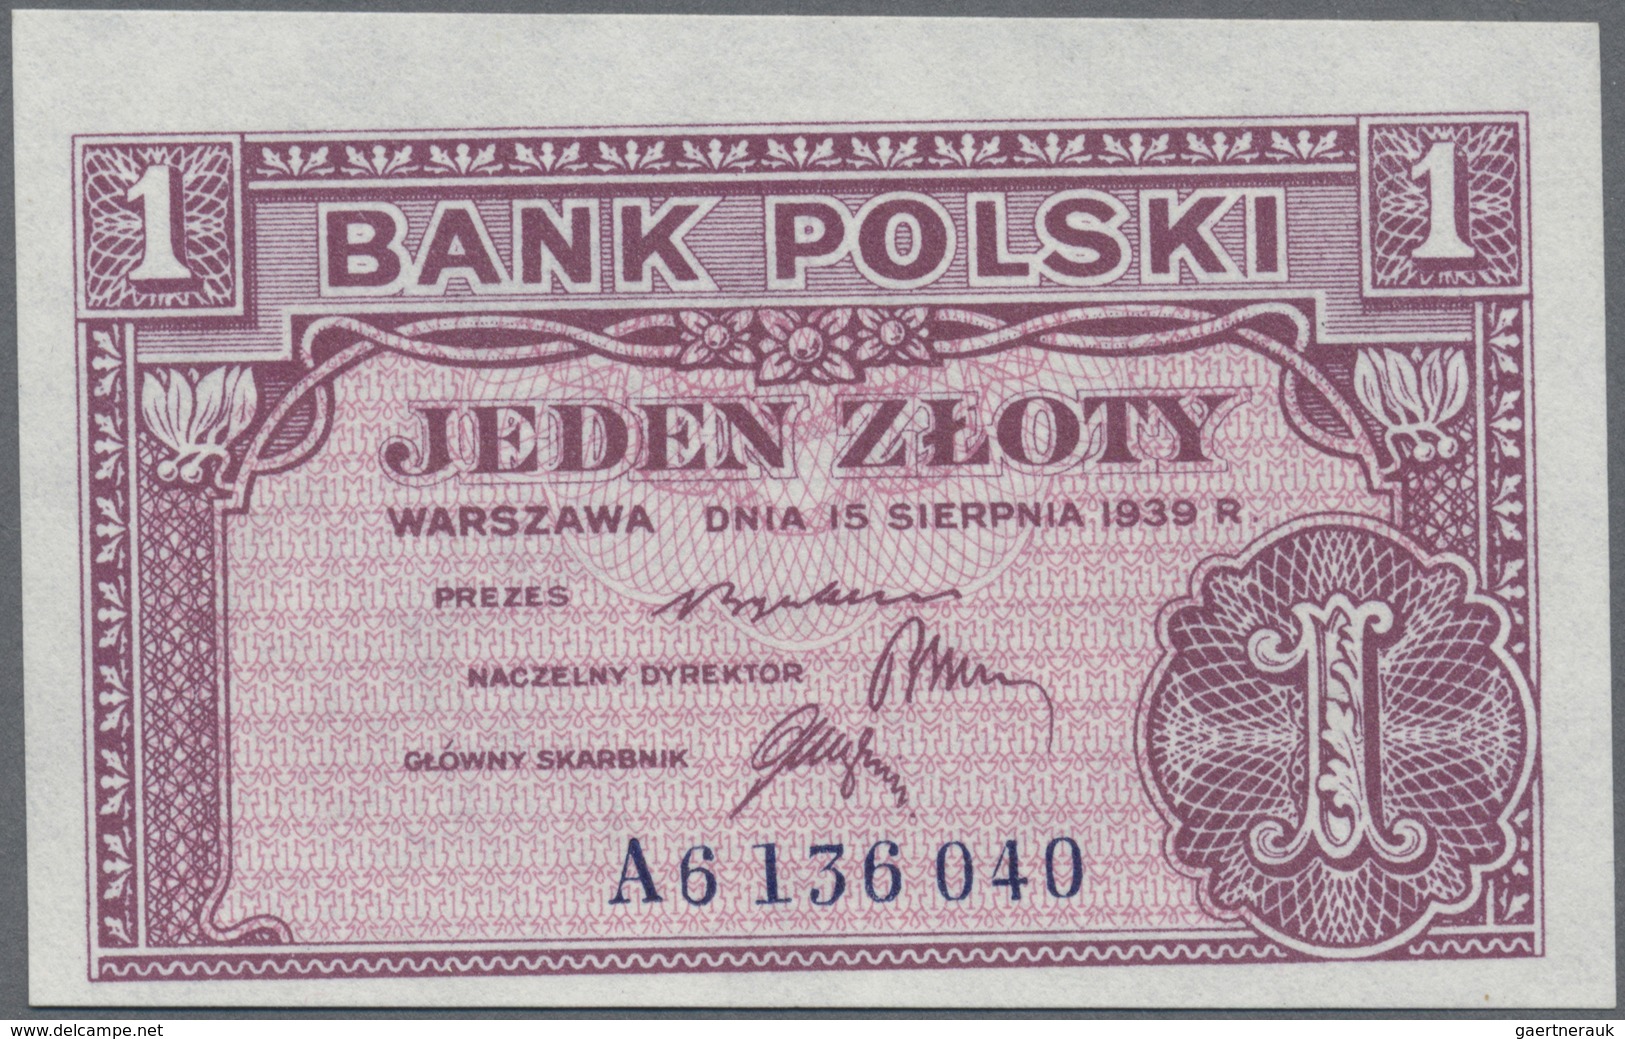 Poland / Polen: 1 Zloty 1939 Remainder, P.79r In UNC Condition - Poland